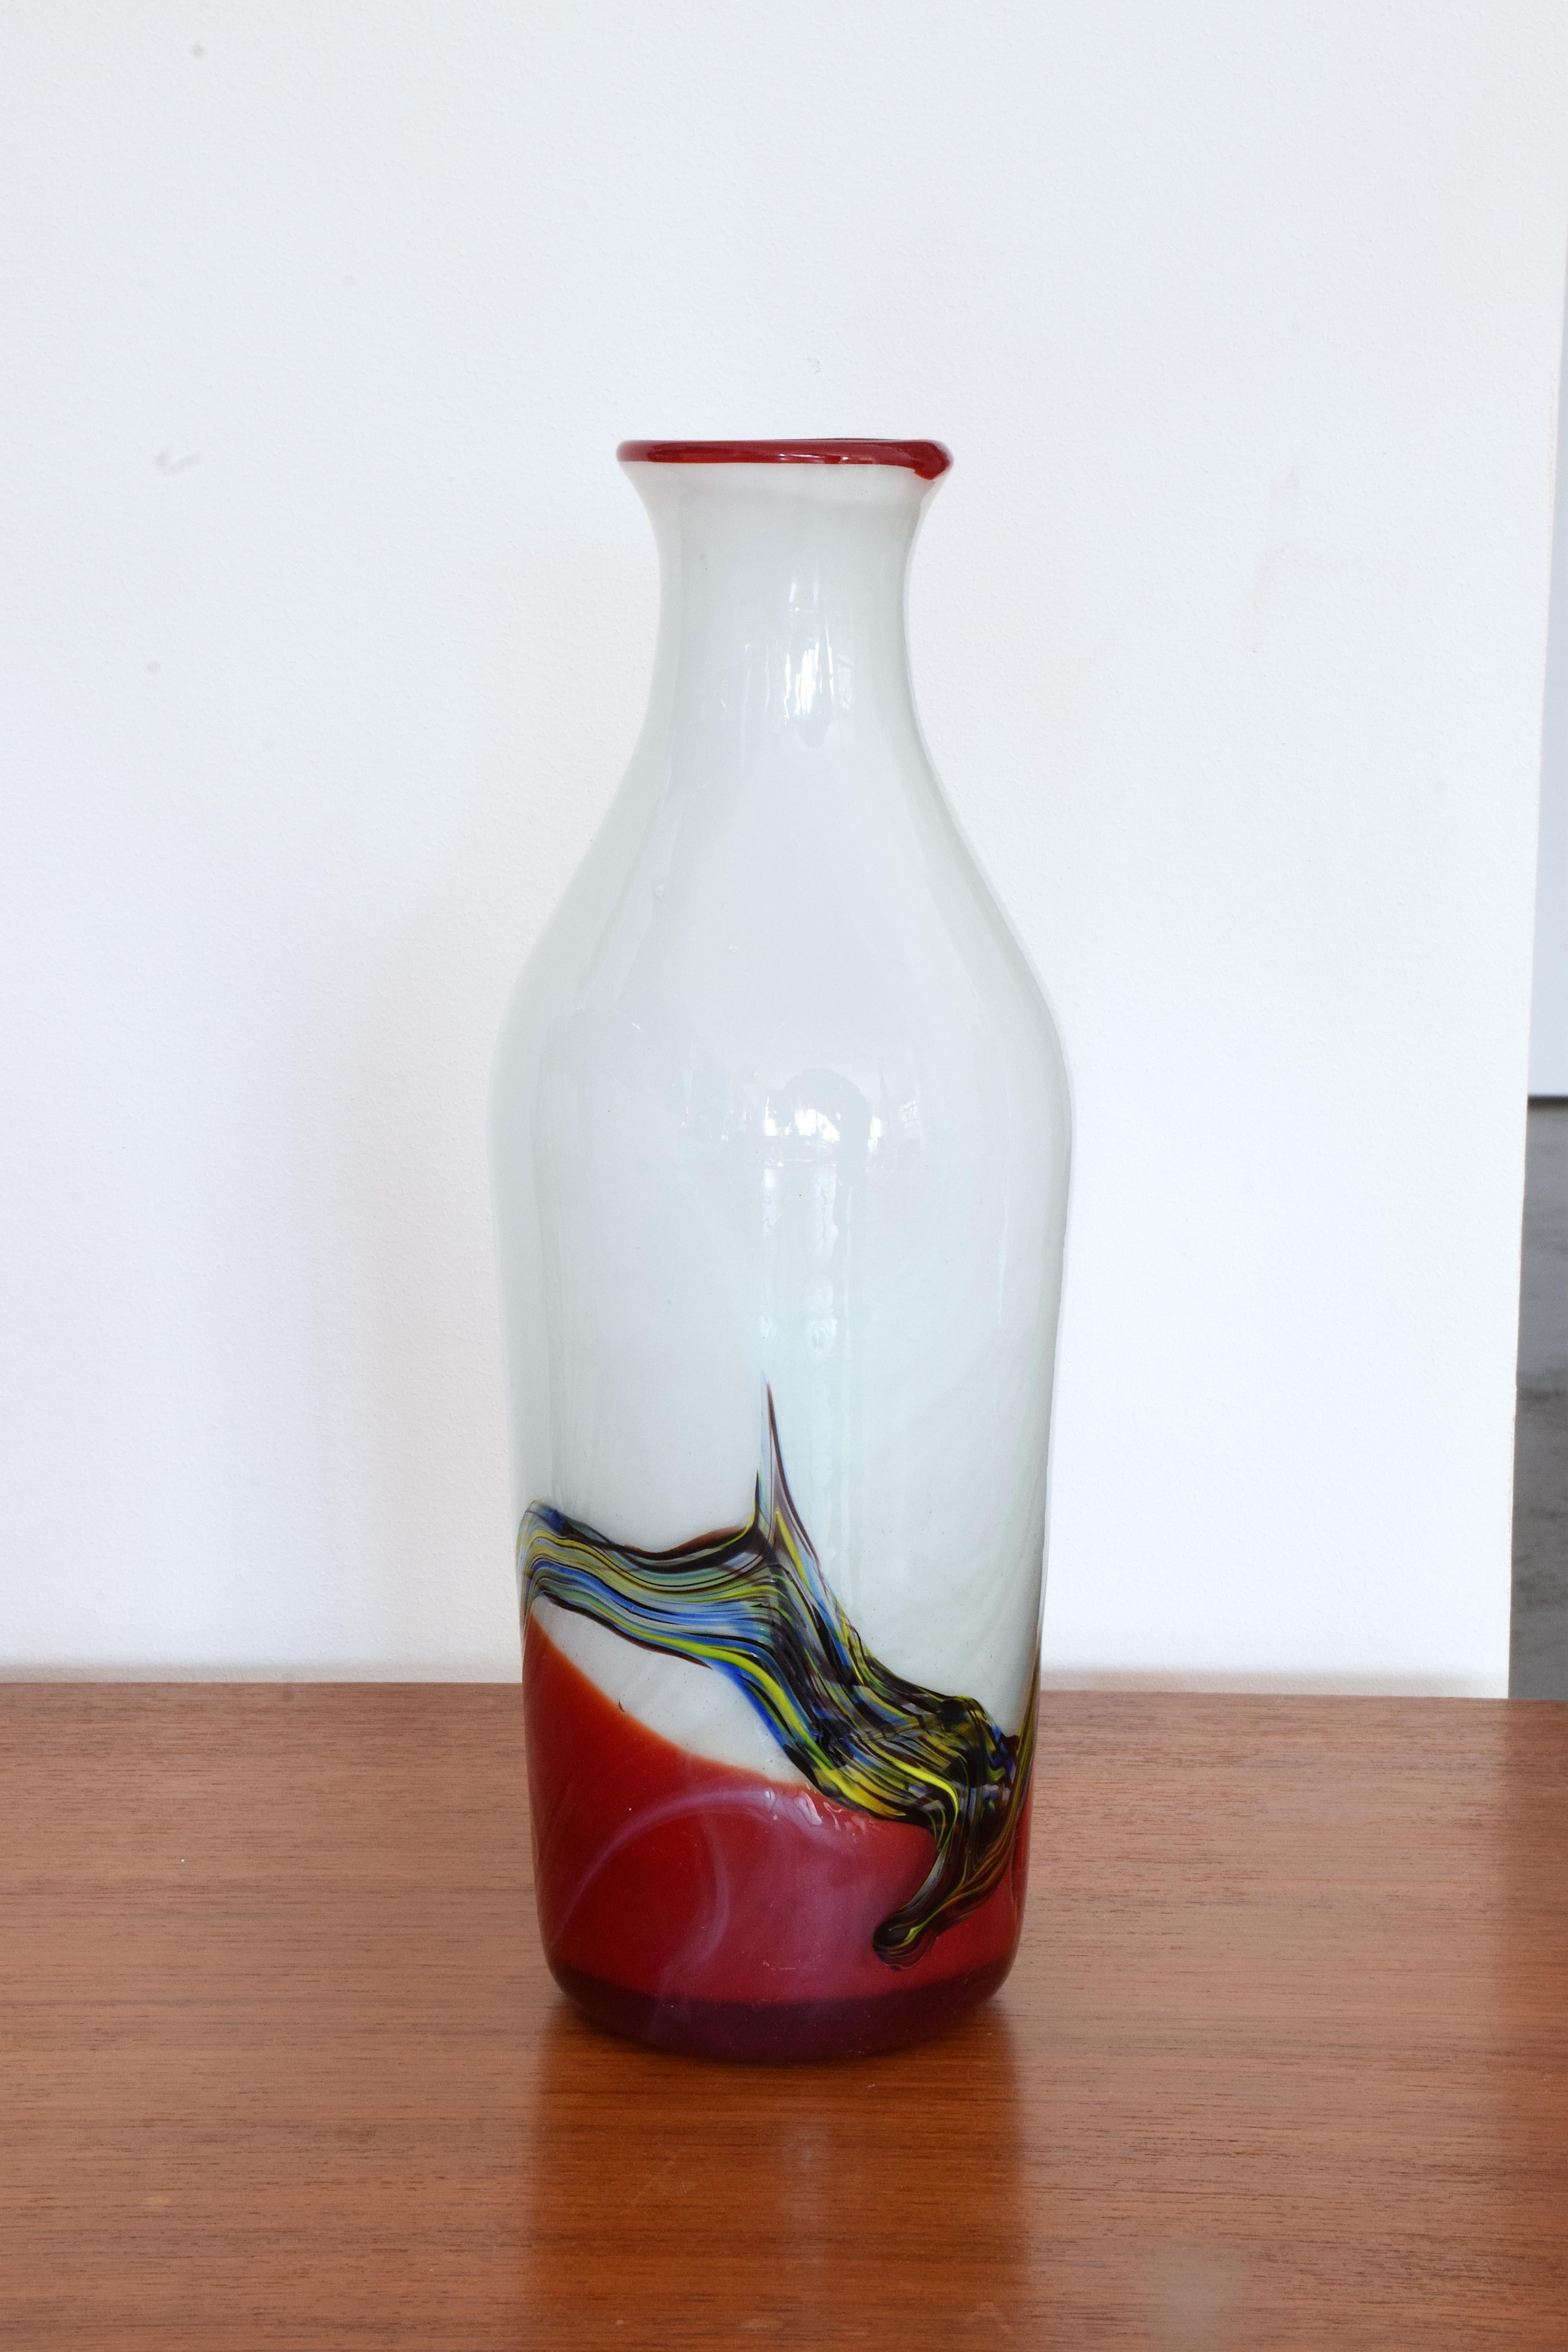 Un vase italien vintage du 20ème siècle en forme de bouteille en blanc avec un bord rouge, un fond et un motif abstrait.
Italie, vers les années 1970-1980. Un bel objet décoratif.

À propos de nous : 
Spirit Gallery présente un mélange harmonieux de